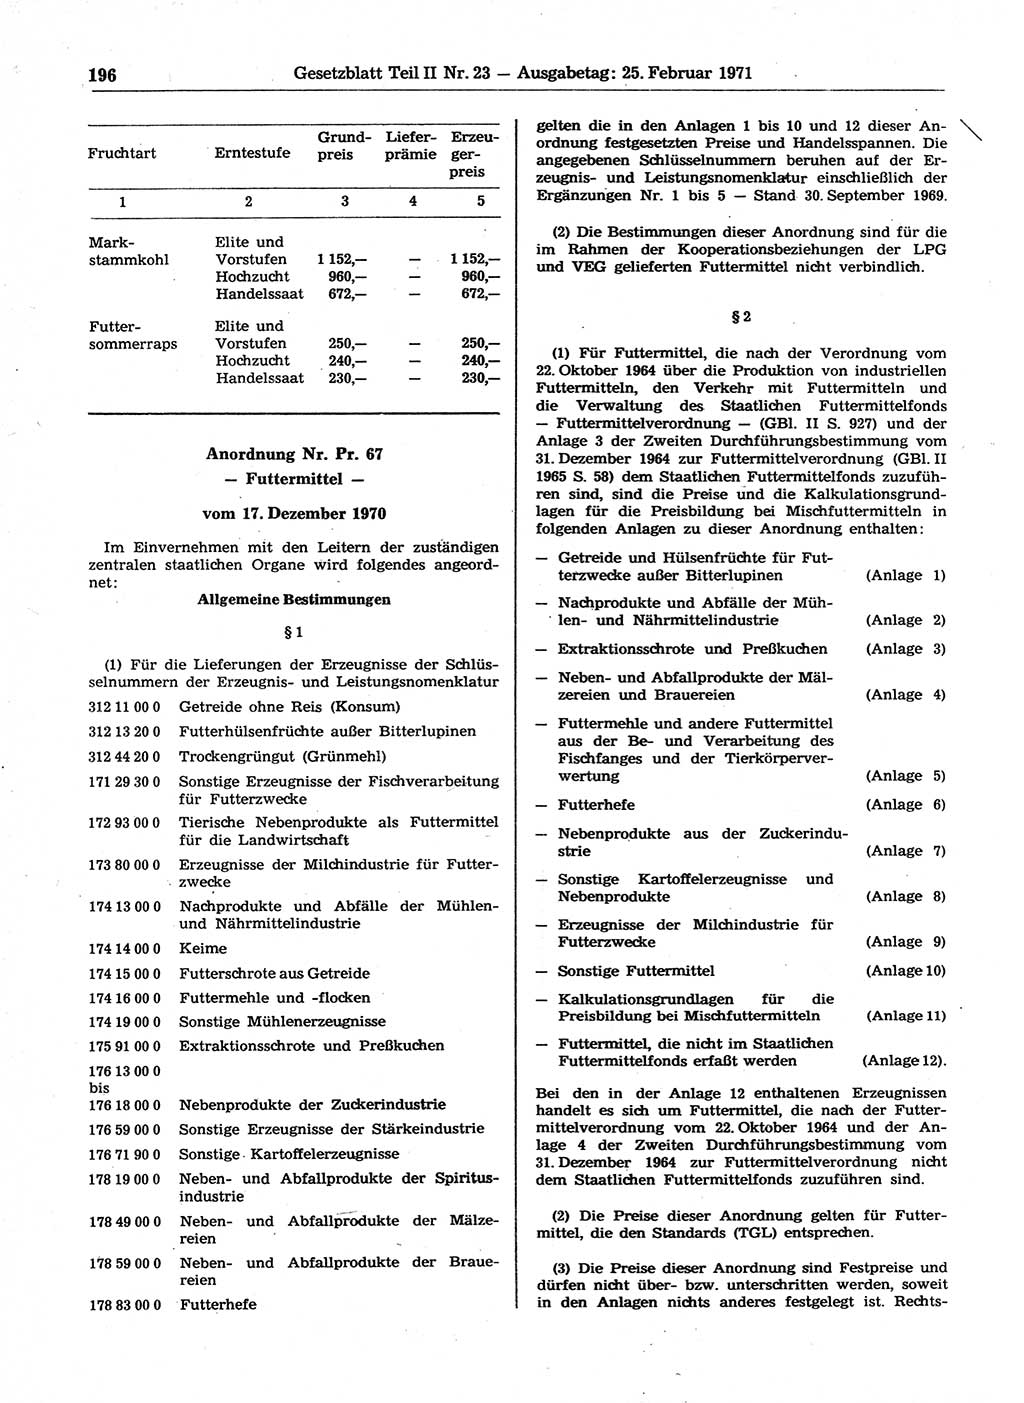 Gesetzblatt (GBl.) der Deutschen Demokratischen Republik (DDR) Teil ⅠⅠ 1971, Seite 196 (GBl. DDR ⅠⅠ 1971, S. 196)